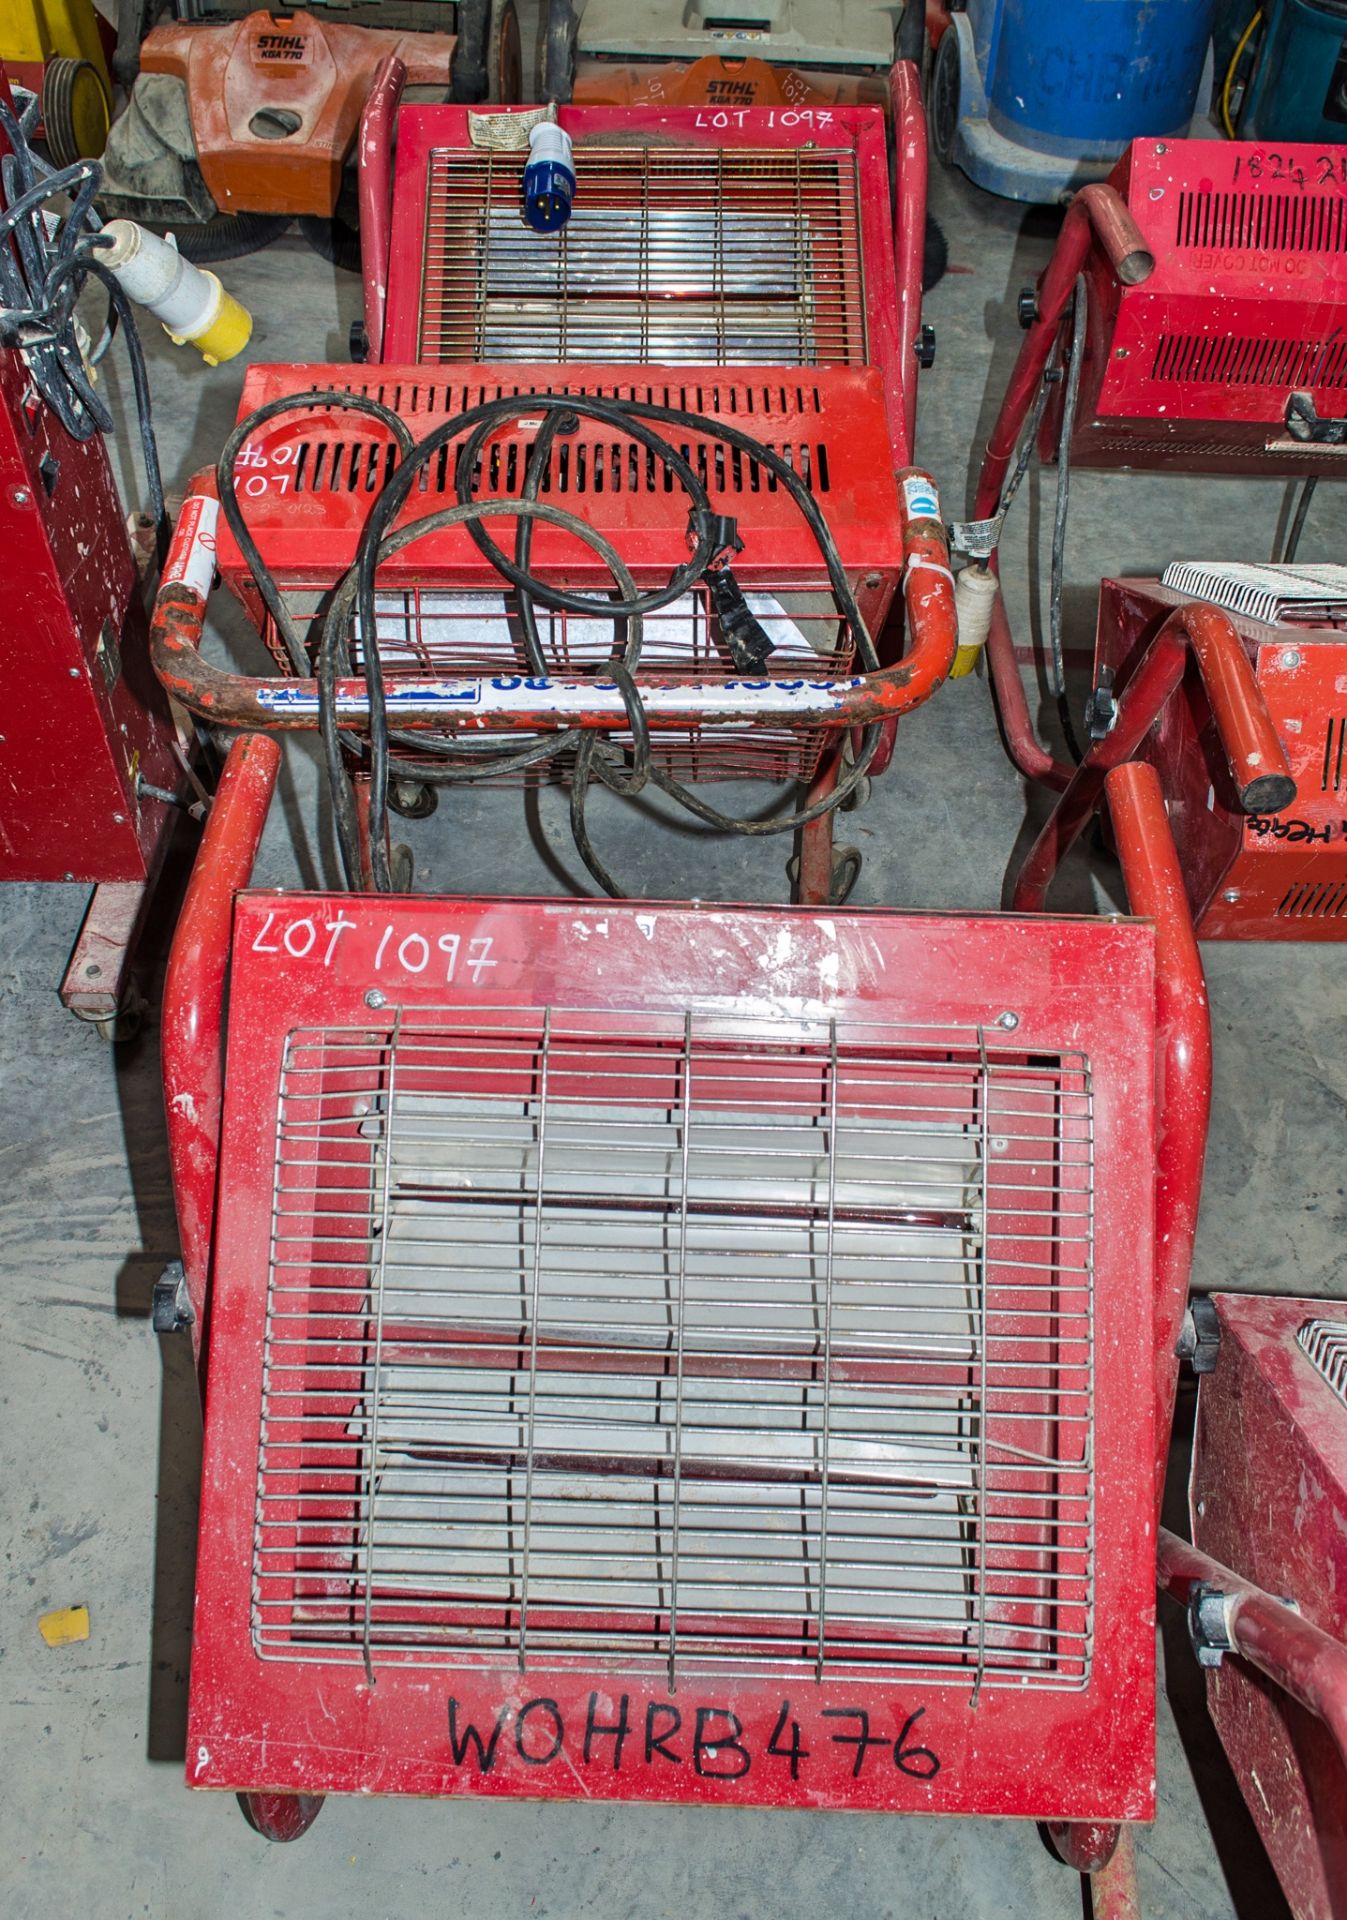 3 - Infra red heaters 2 - 240v & 1 - 110v 1825-1576/1825-0123/WOHR8476